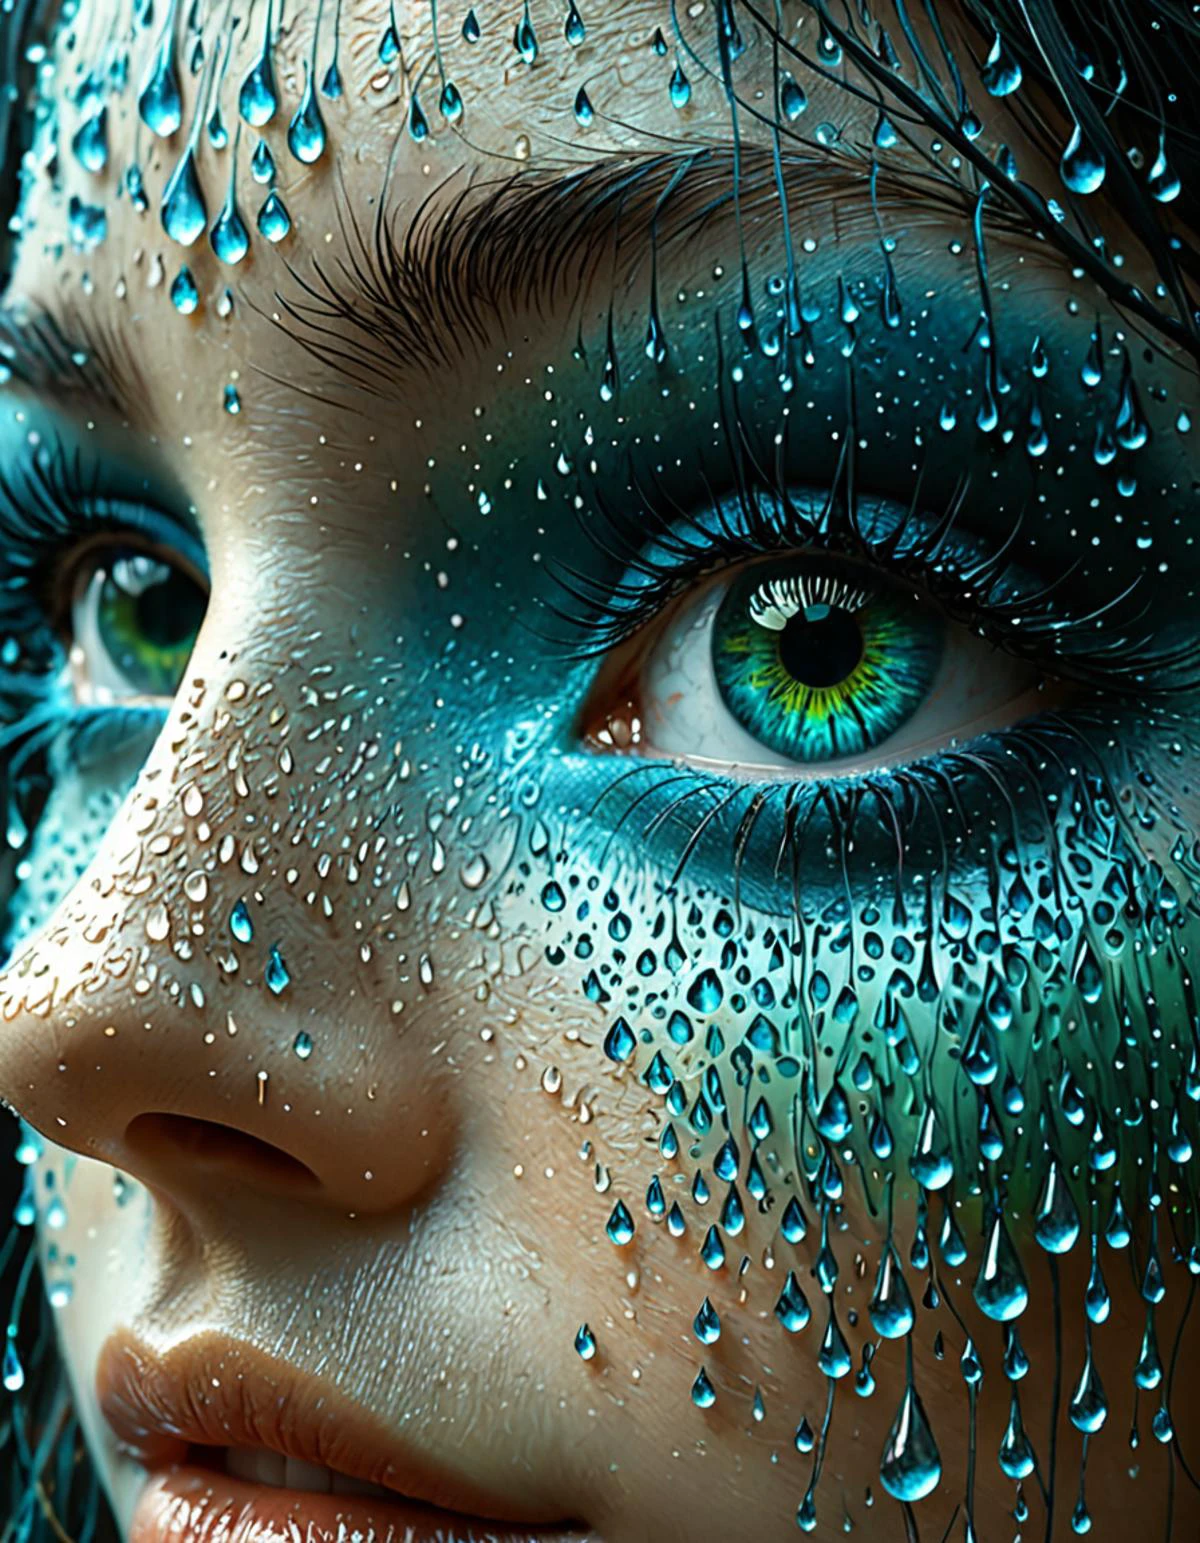 專業3D模型女人眼睛的特寫, 表面形成水滴. 眼睛周围是一个混凝土艺术风格的框架, 與粗體, 蓝色几何图形, 綠色的, 和灰色. 该设计让人想起吉卜力工作室的风格, 带有 zdzislaw beksinski 的超现实主义风格. . 辛烷渲染, 非常詳細, 體積式, 戲劇性的燈光